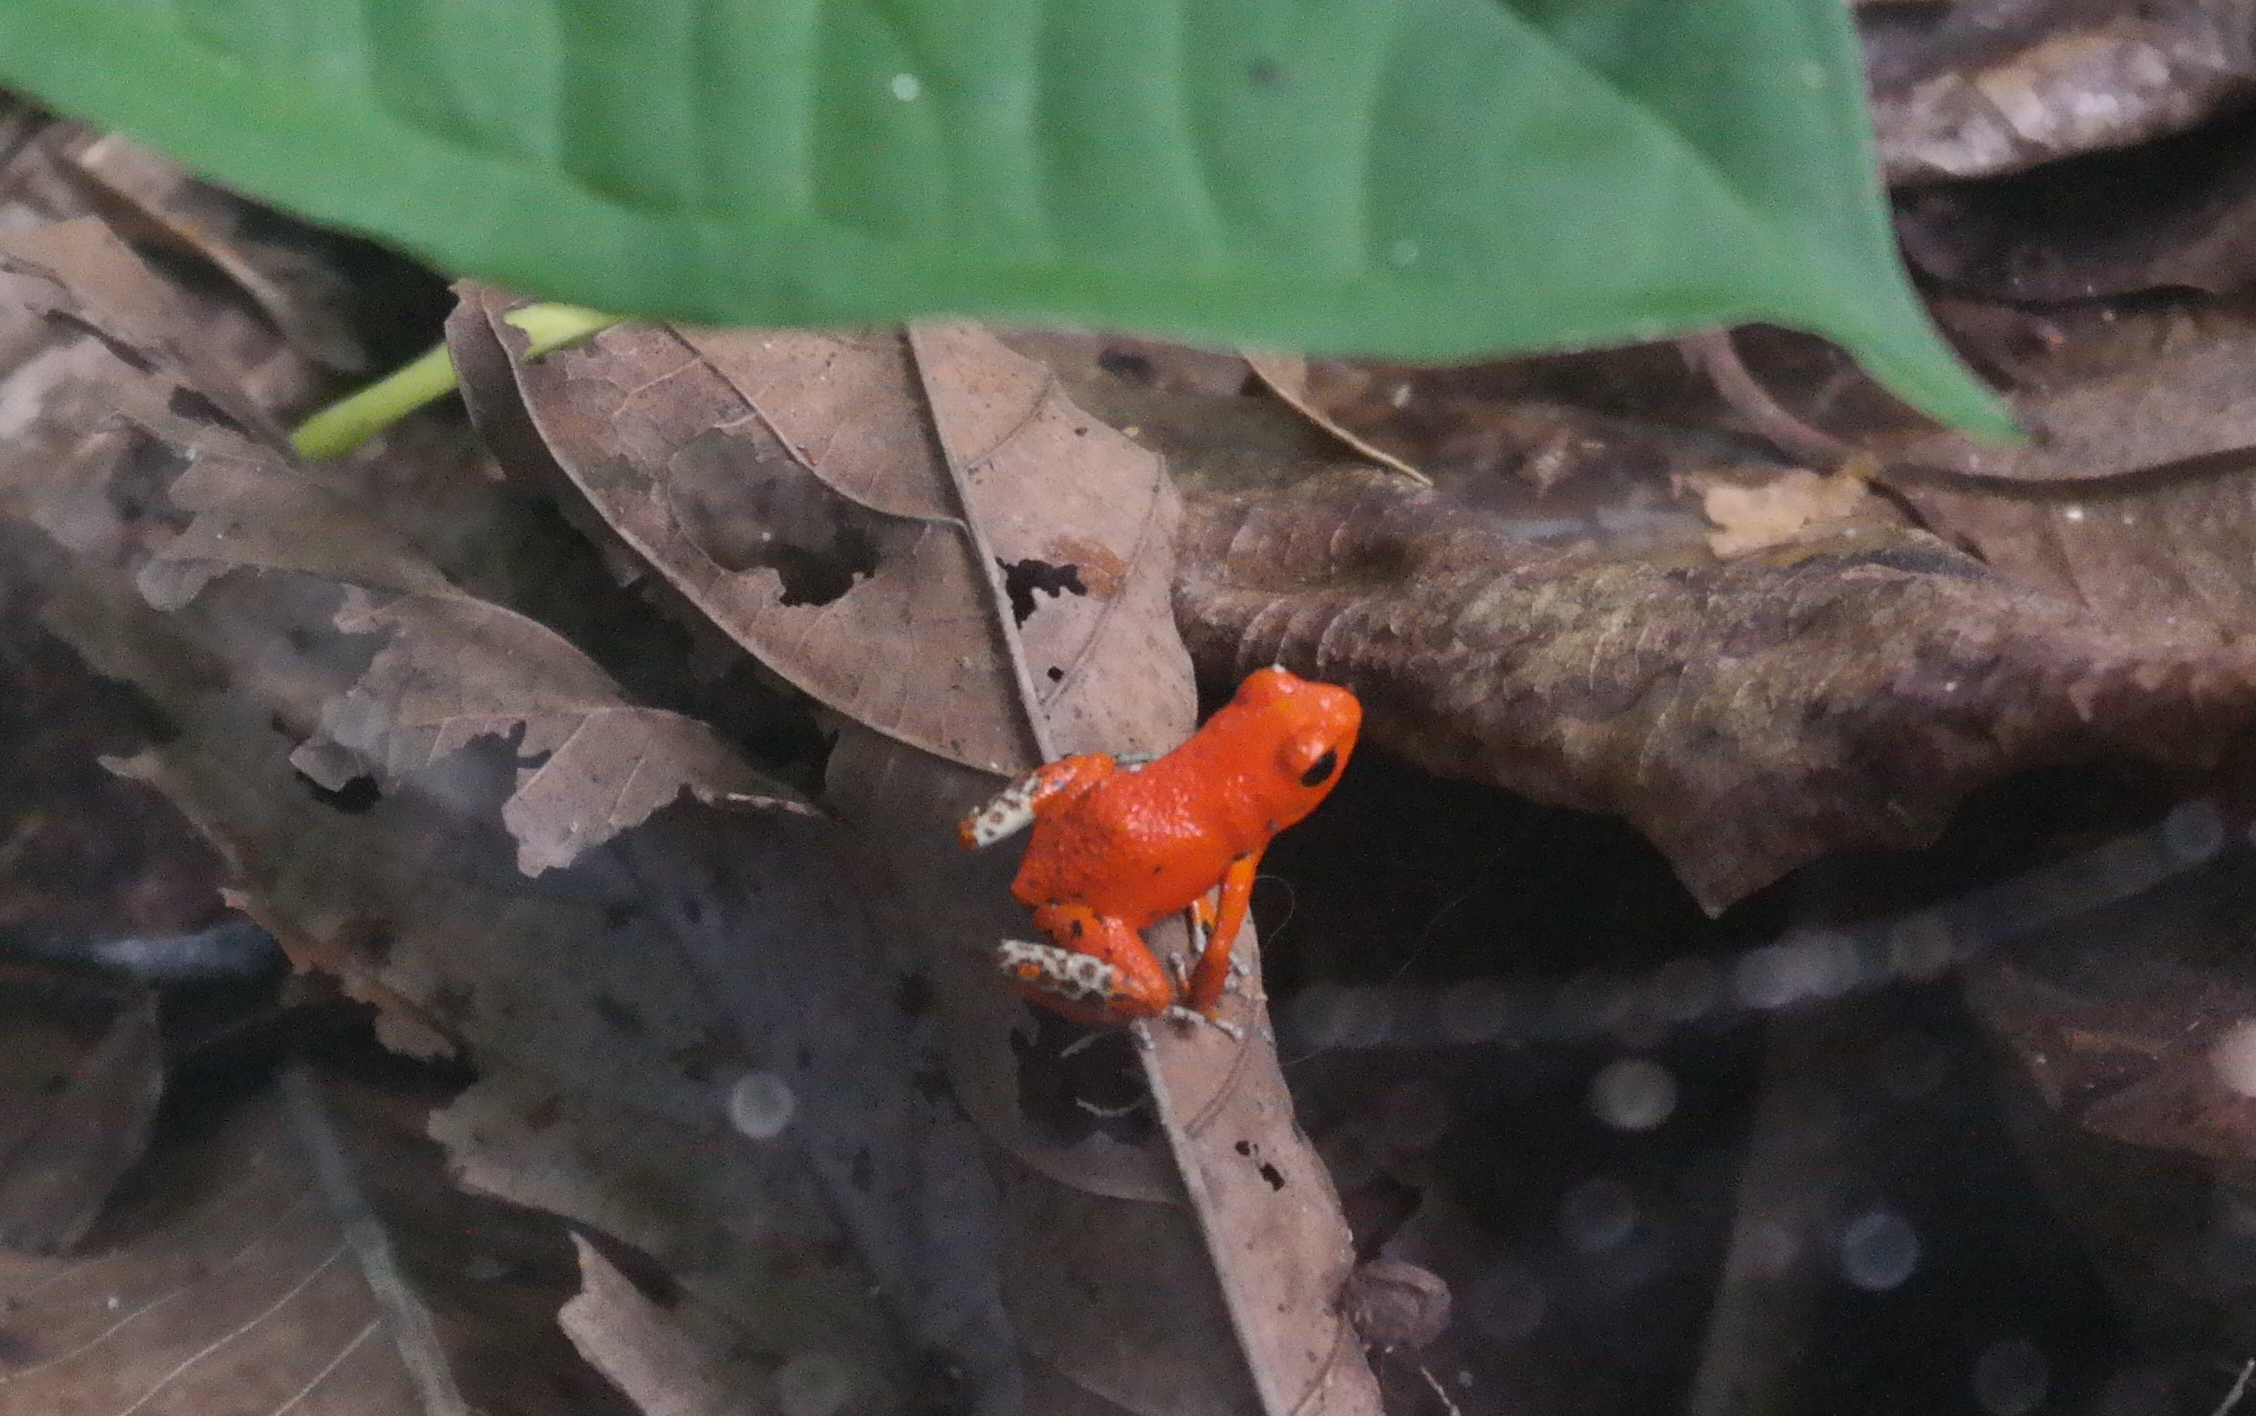 צפרדע קטנה ואדומה באי הצפרדעים - בוקס